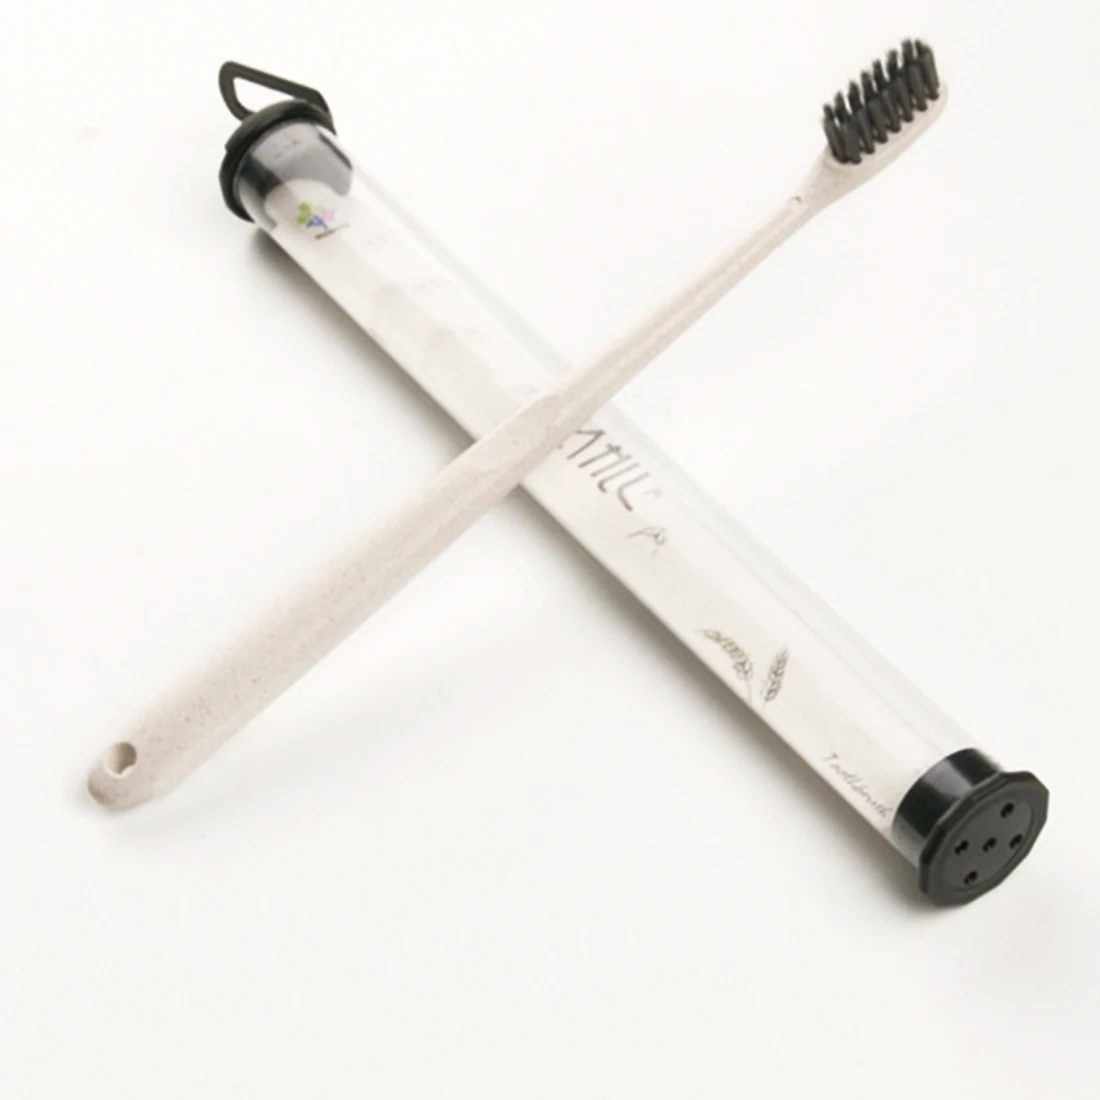 Горячая портативная зубная щетка для путешествий пшеничный стебель ручка мини мягкие бамбуковые угольные головки нано-антибактериальная